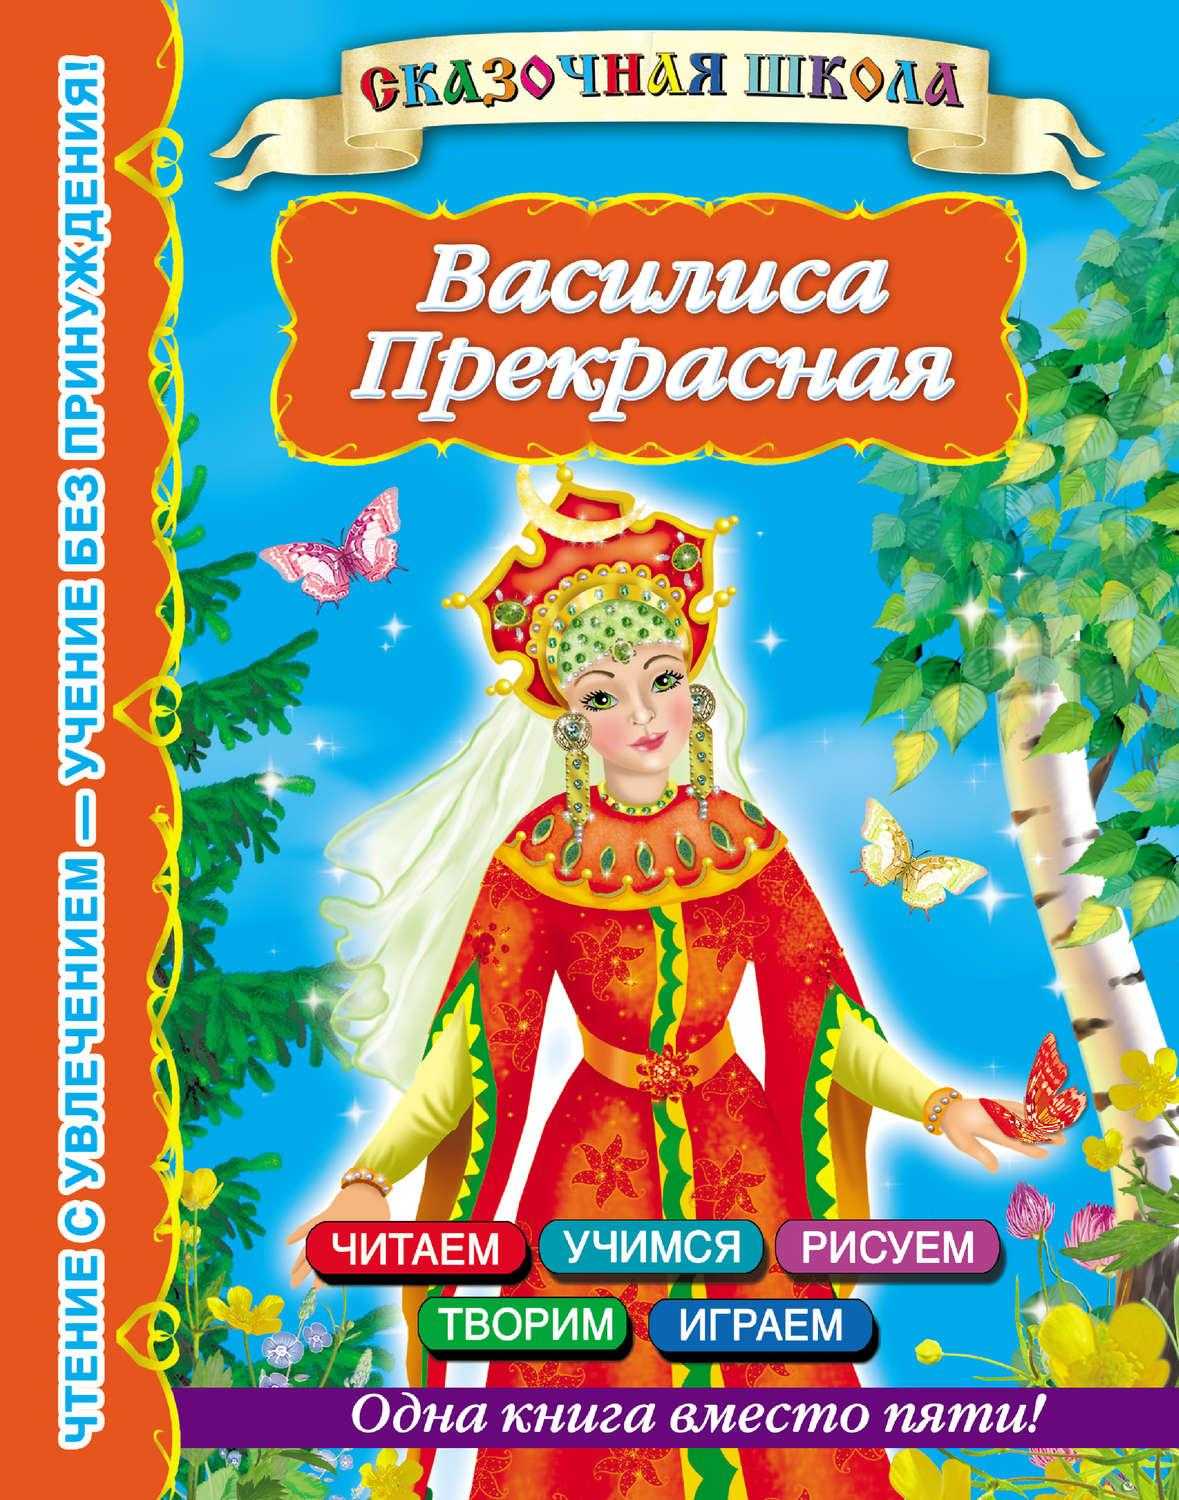 Читать сказку василиса прекрасная - русская сказка, онлайн бесплатно с иллюстрациями.